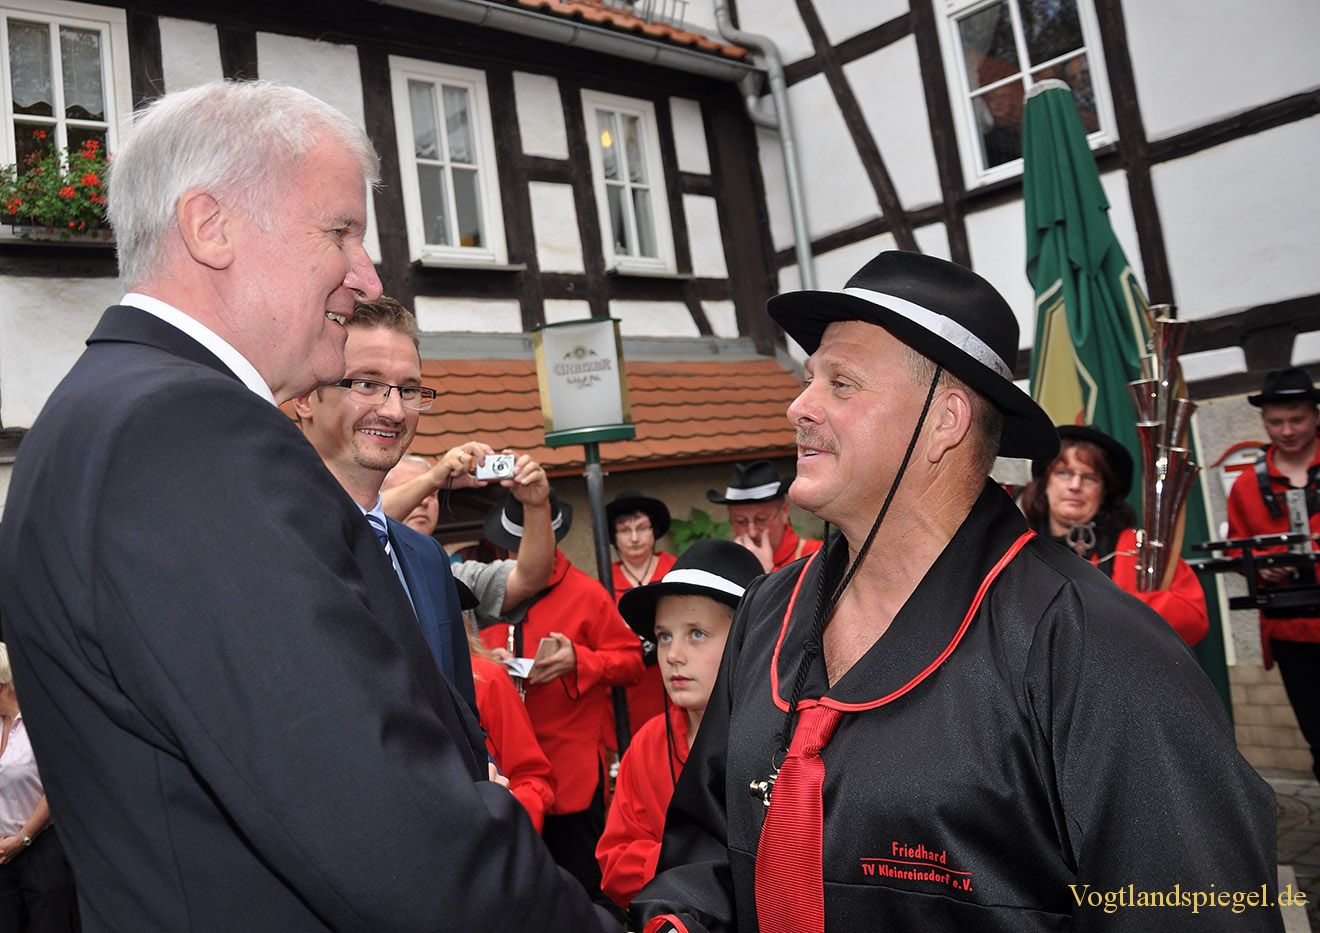 Bayerns Ministerpräsident Horst Seehofer besucht Landgemeinde Mohlsdorf-Teichwolframsdorf